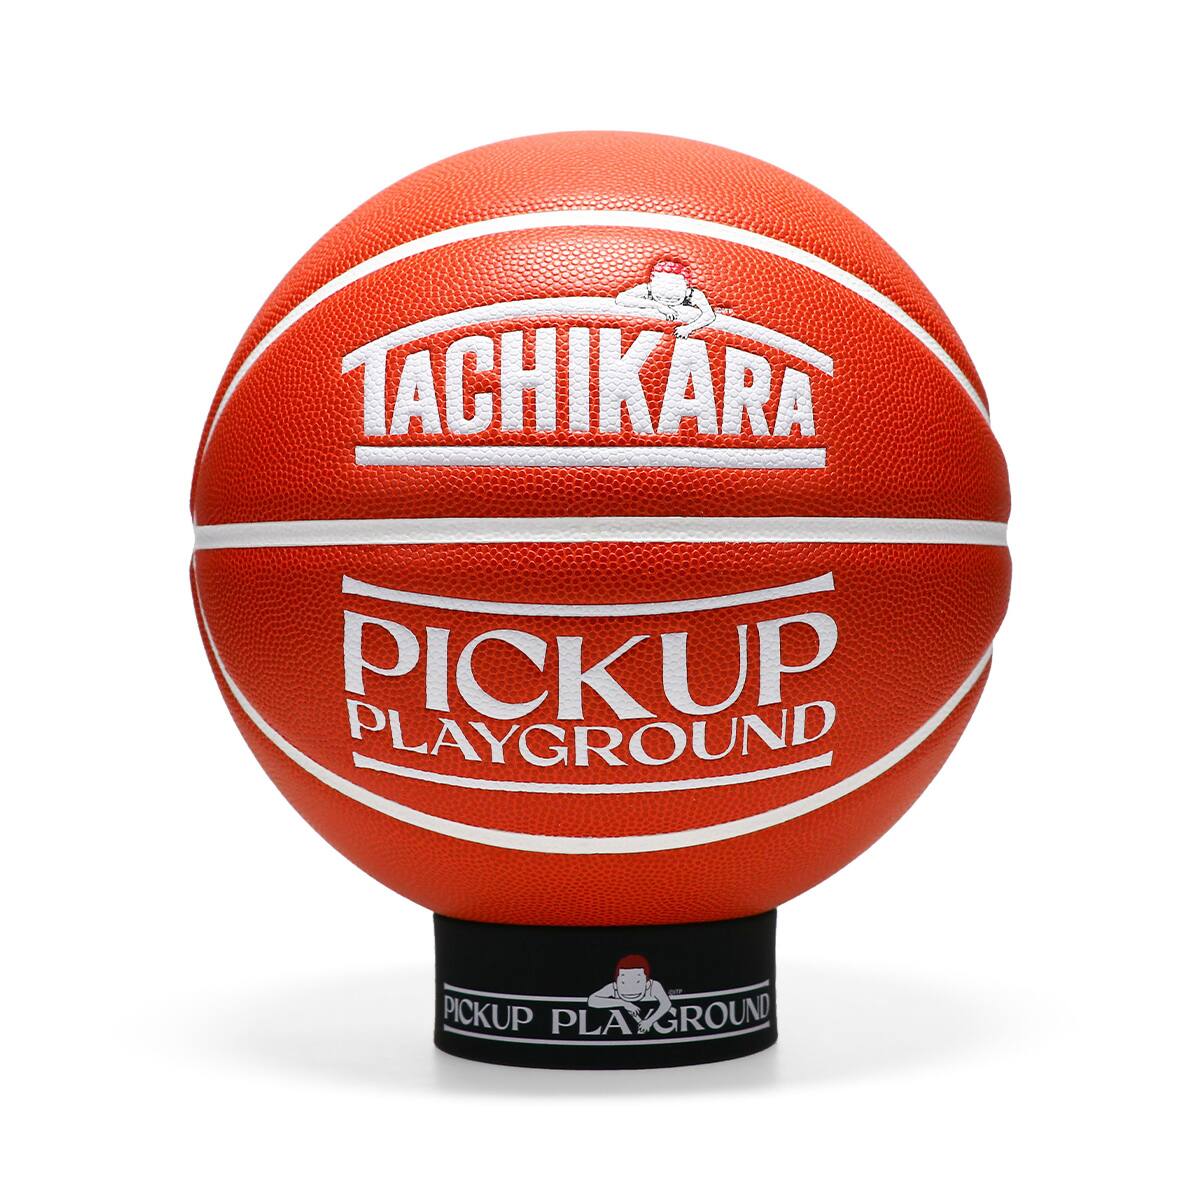 PICK UP PLAYGROUND × TACHIKARA BALL PACK - バスケットボール